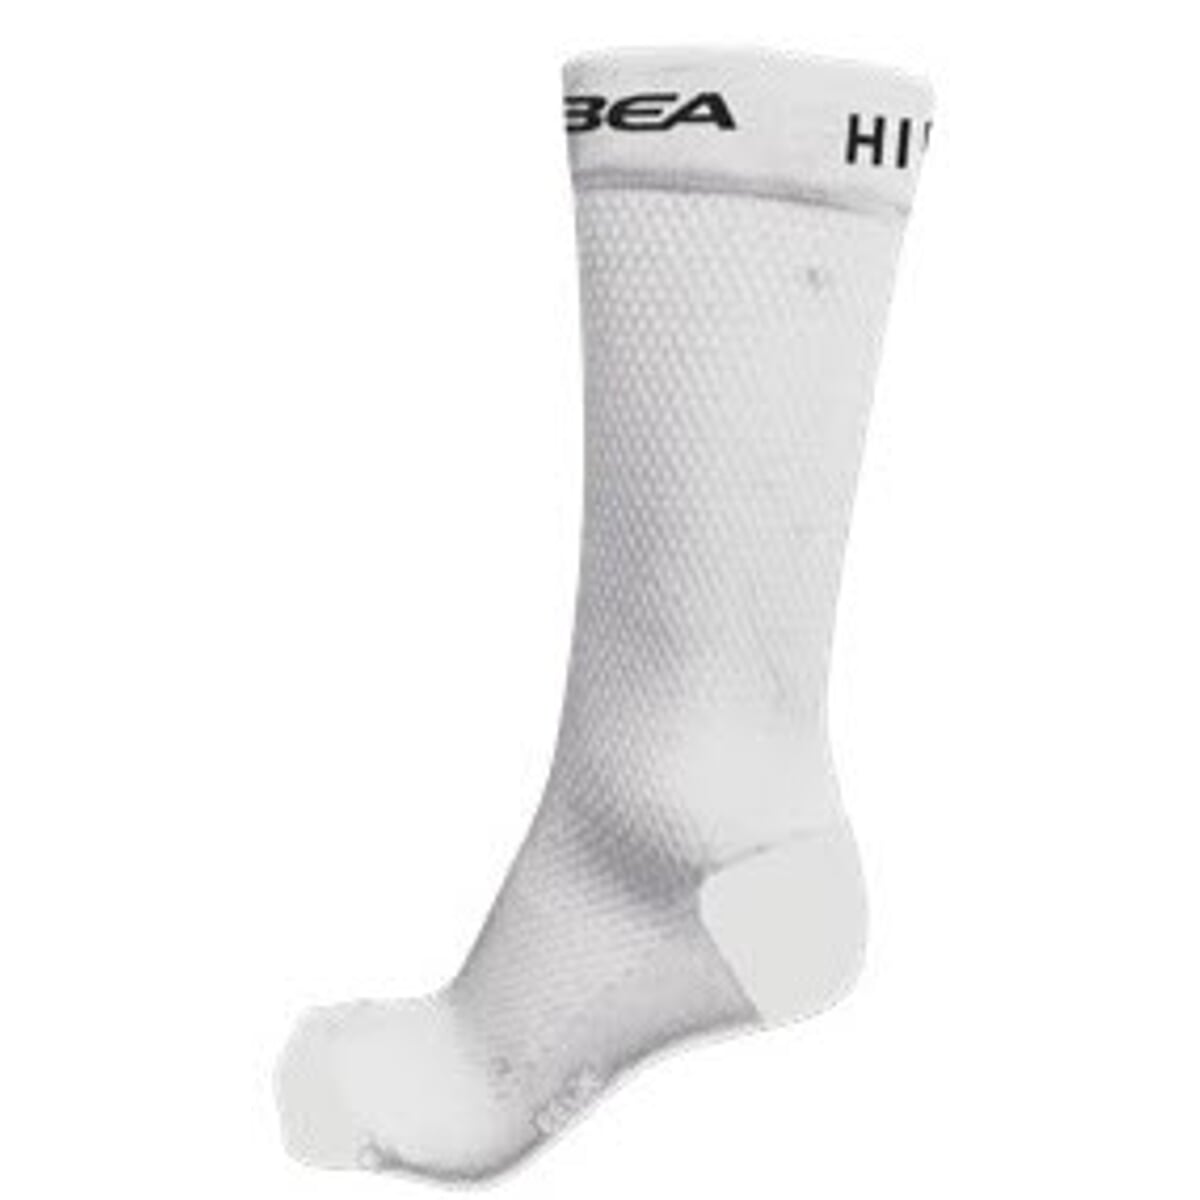 Ponožky ORBEA